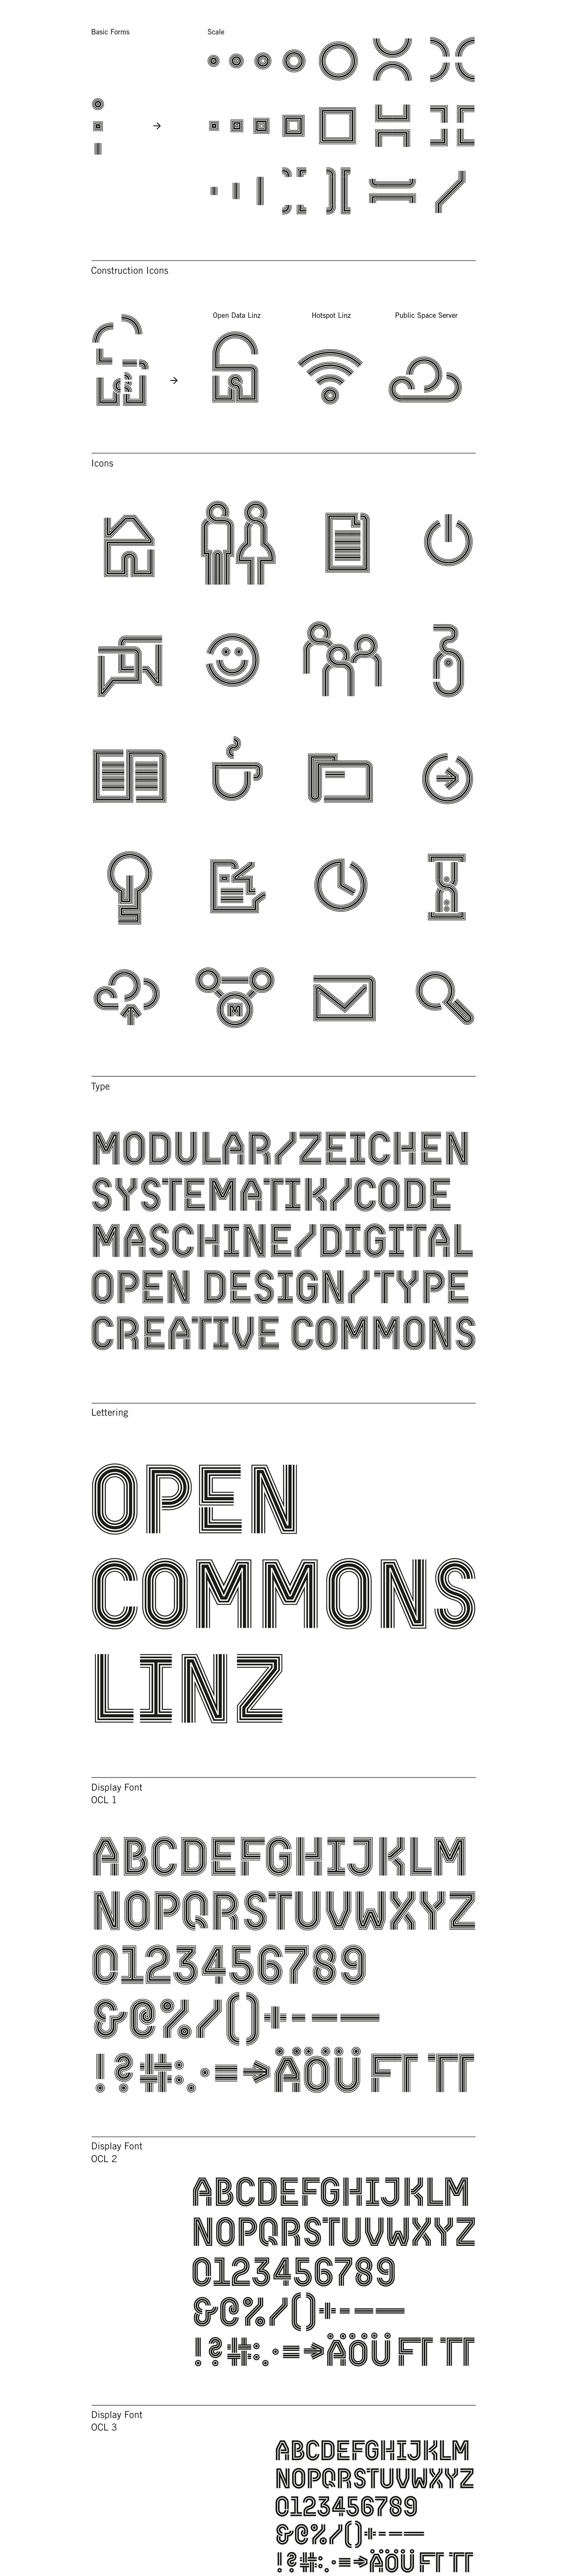 open commons linz identity